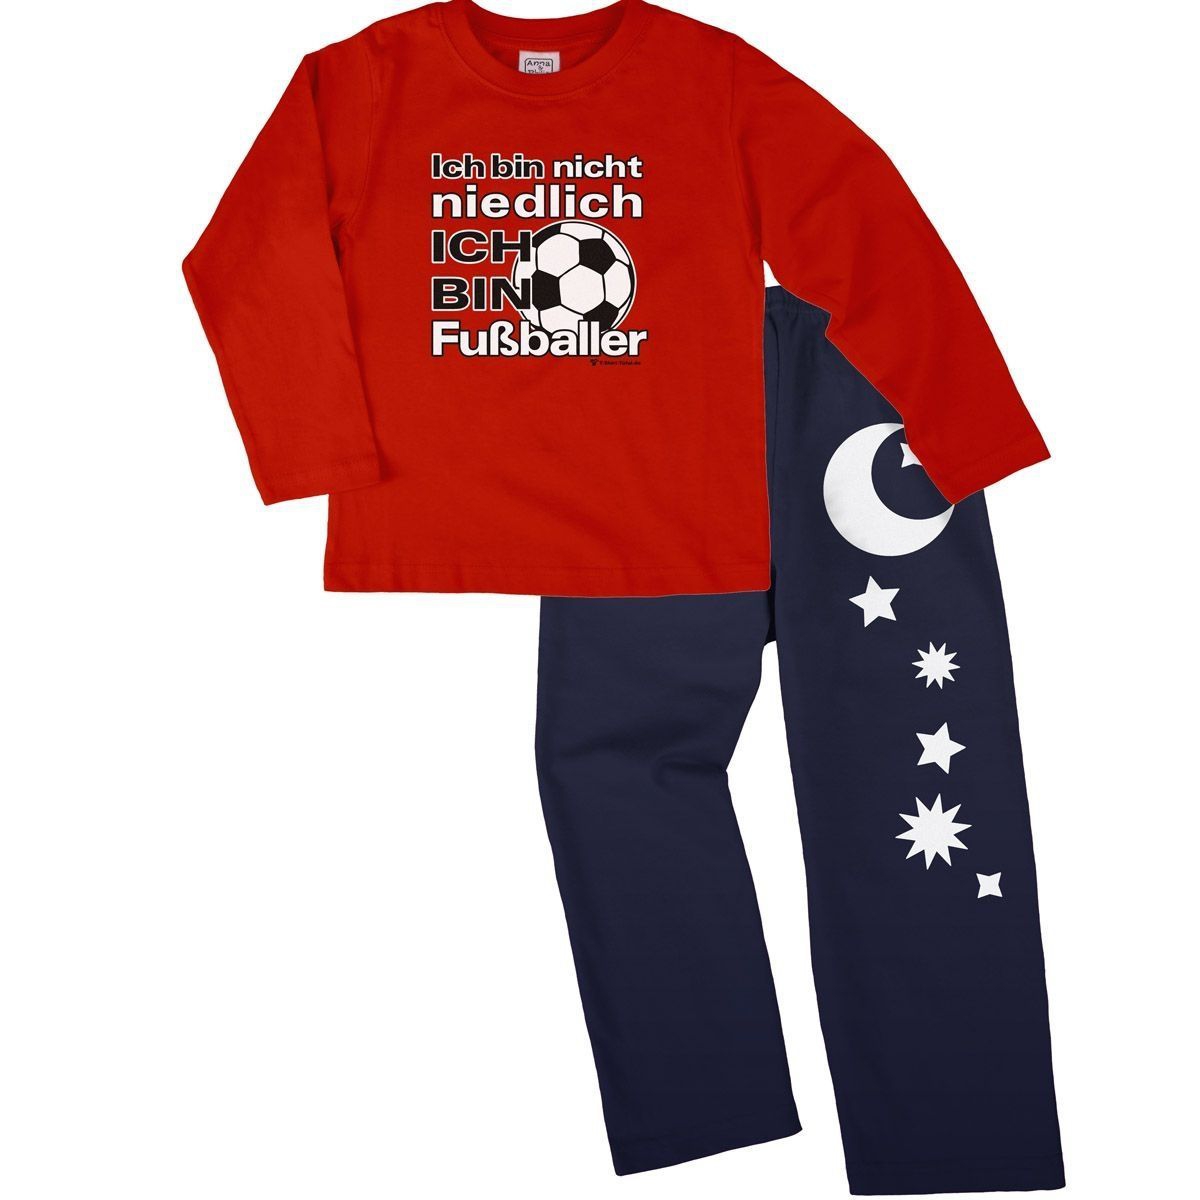 Niedlich Fußballer Pyjama Set rot / navy 110 / 116